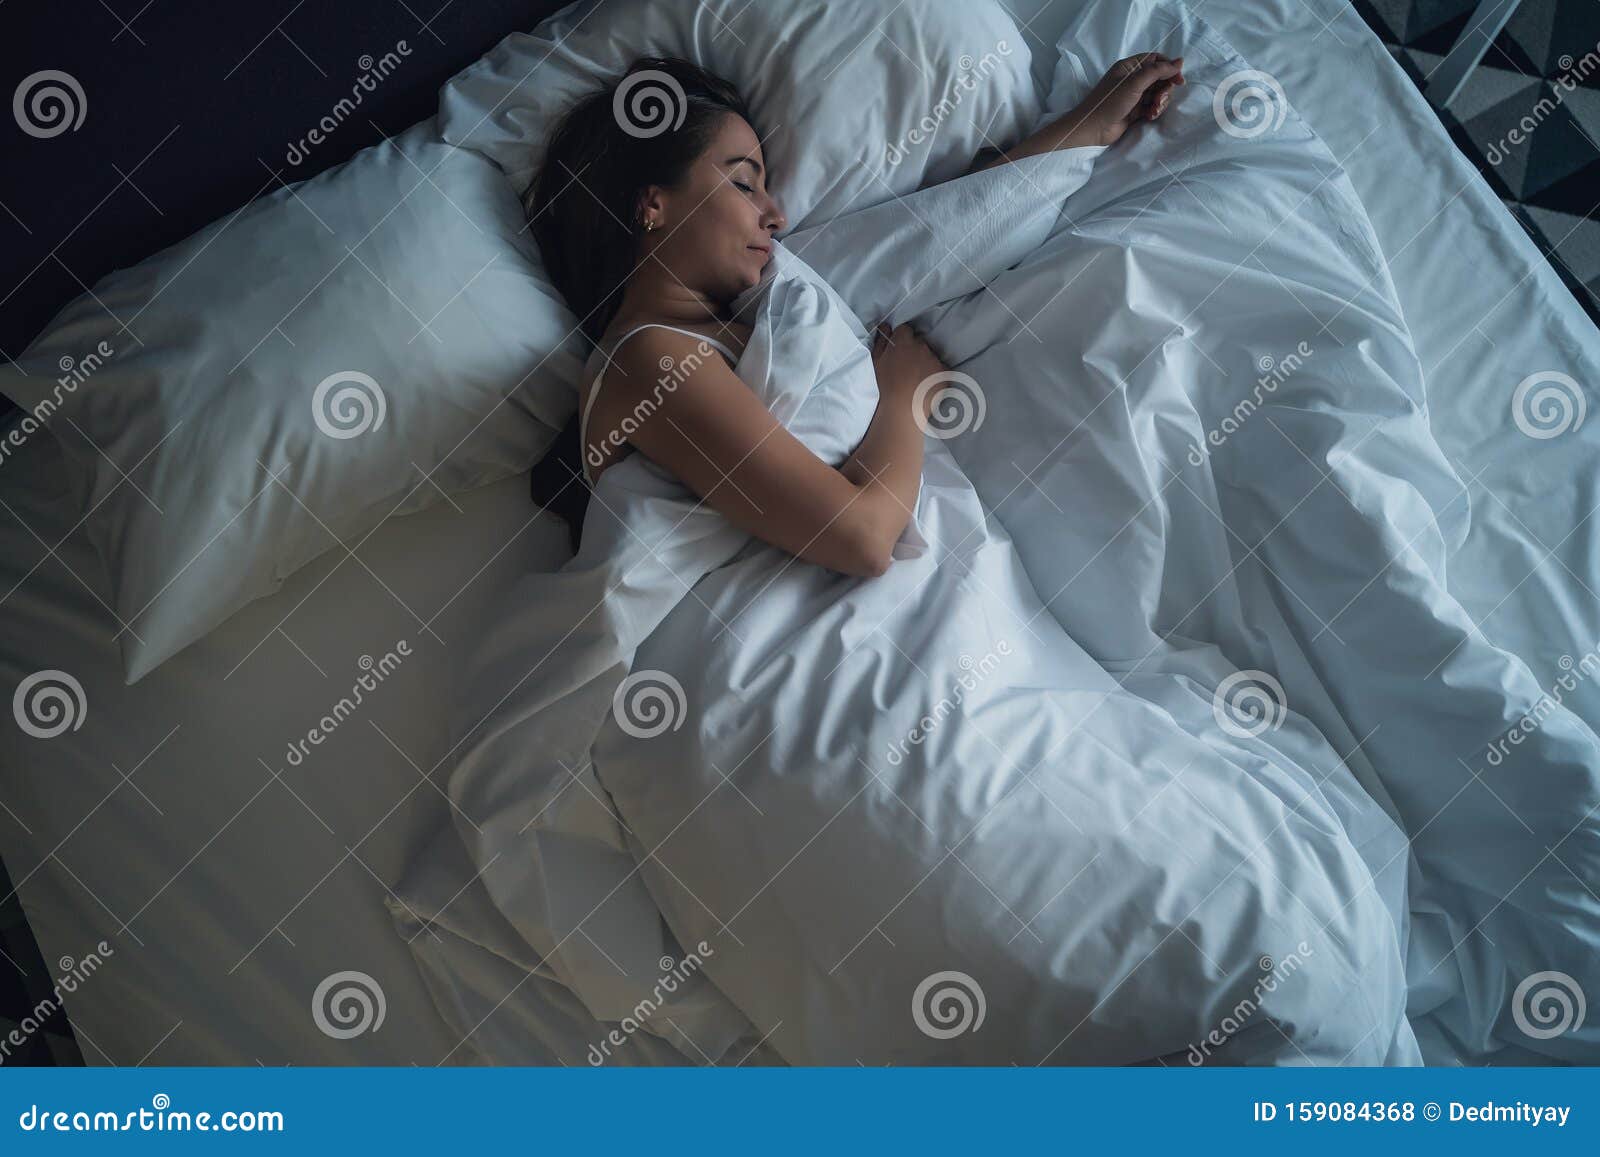 Красивые девушки на кровати фото